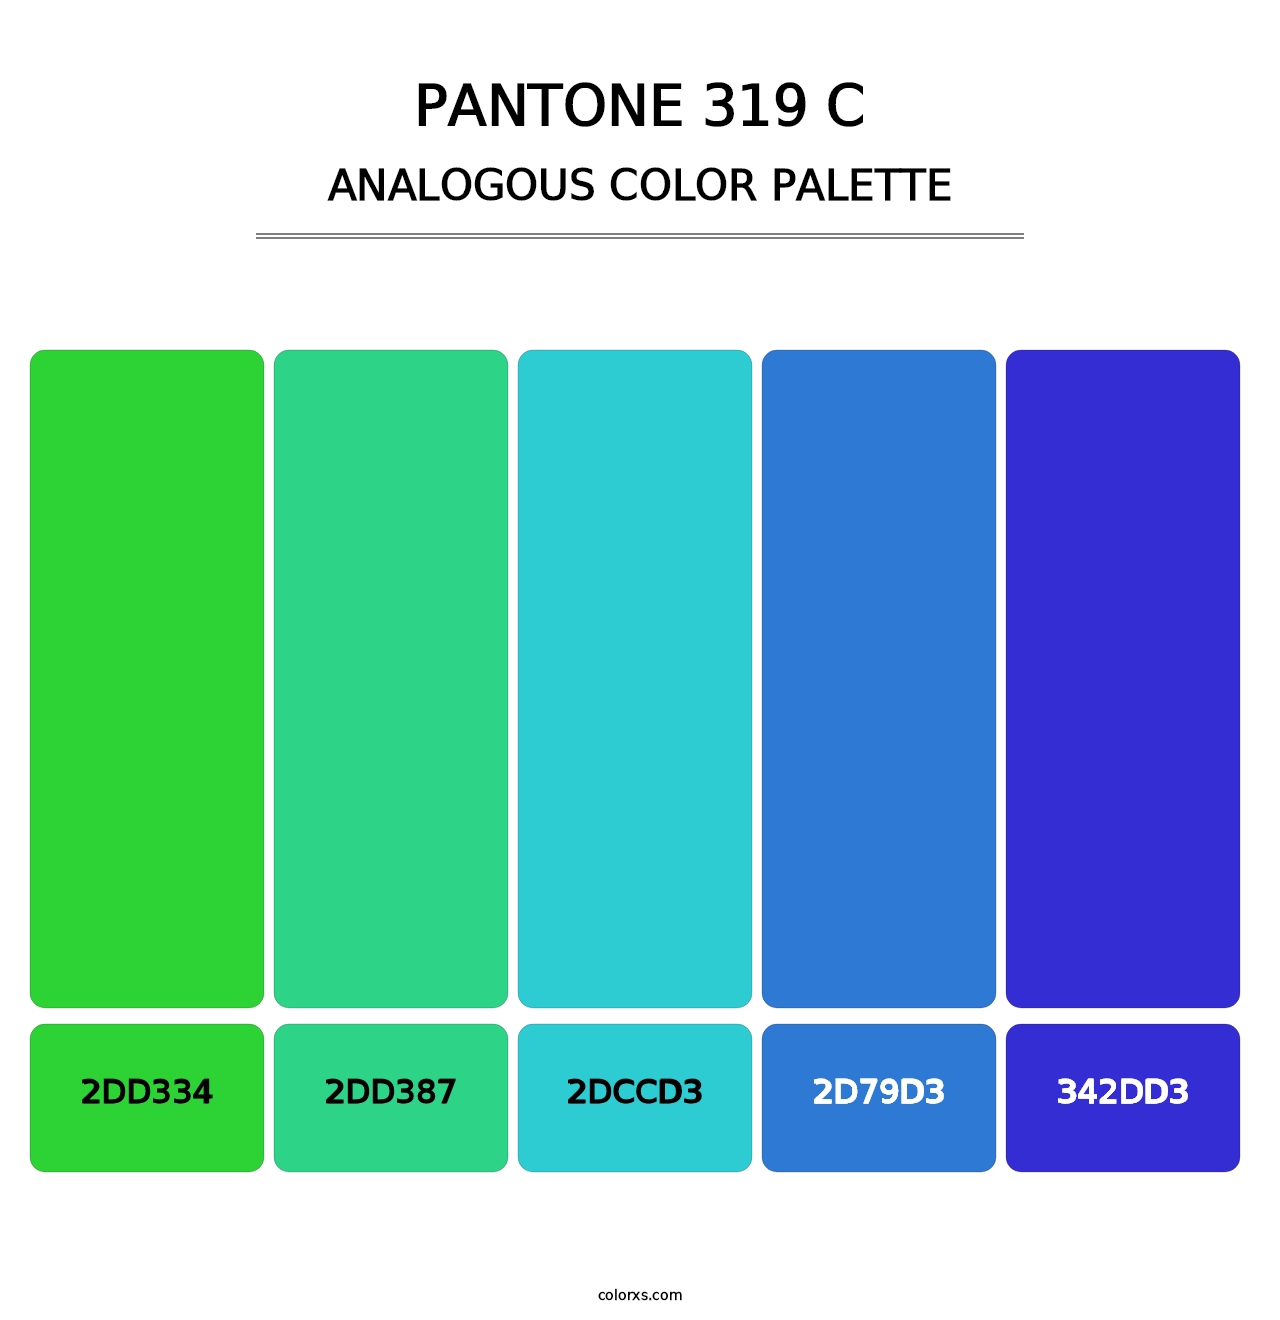 PANTONE 319 C - Analogous Color Palette